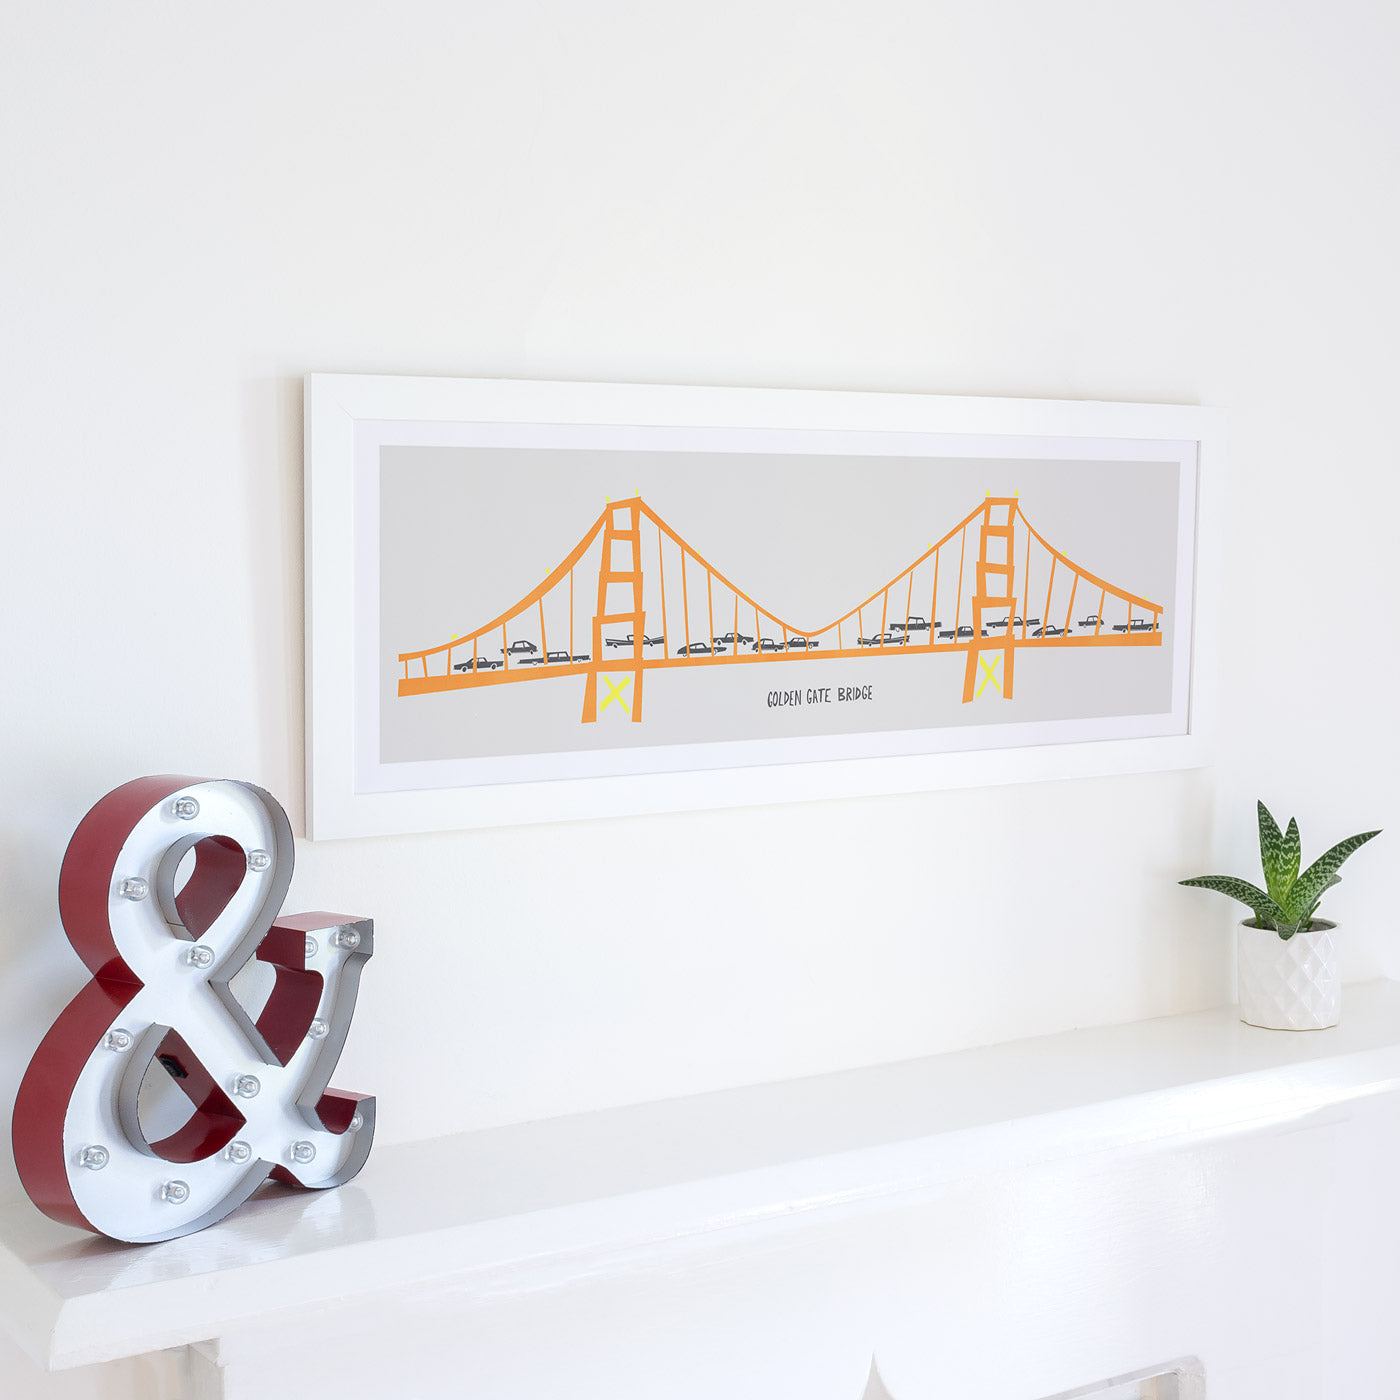 Golden Gate Bridge Panoramic Print